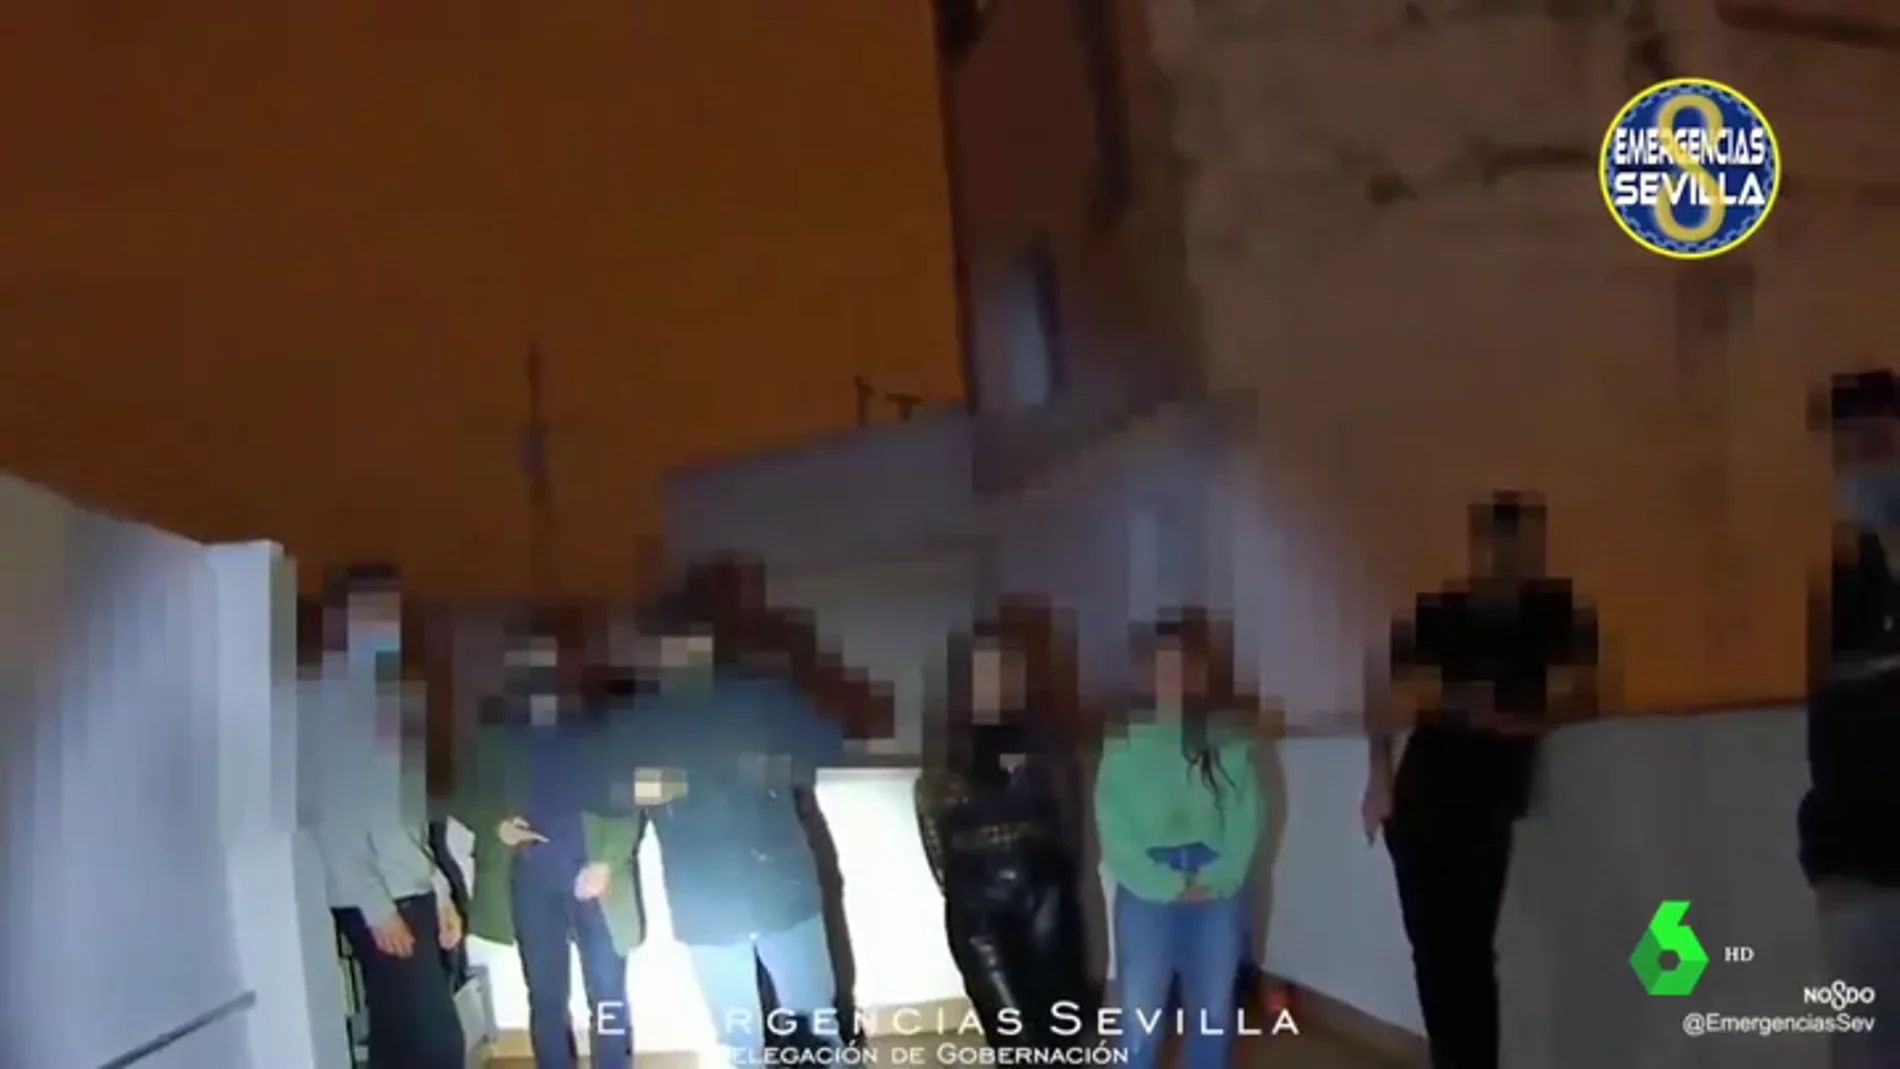 Imagen de jóvenes celebrando una fiesta ilegal en Sevilla